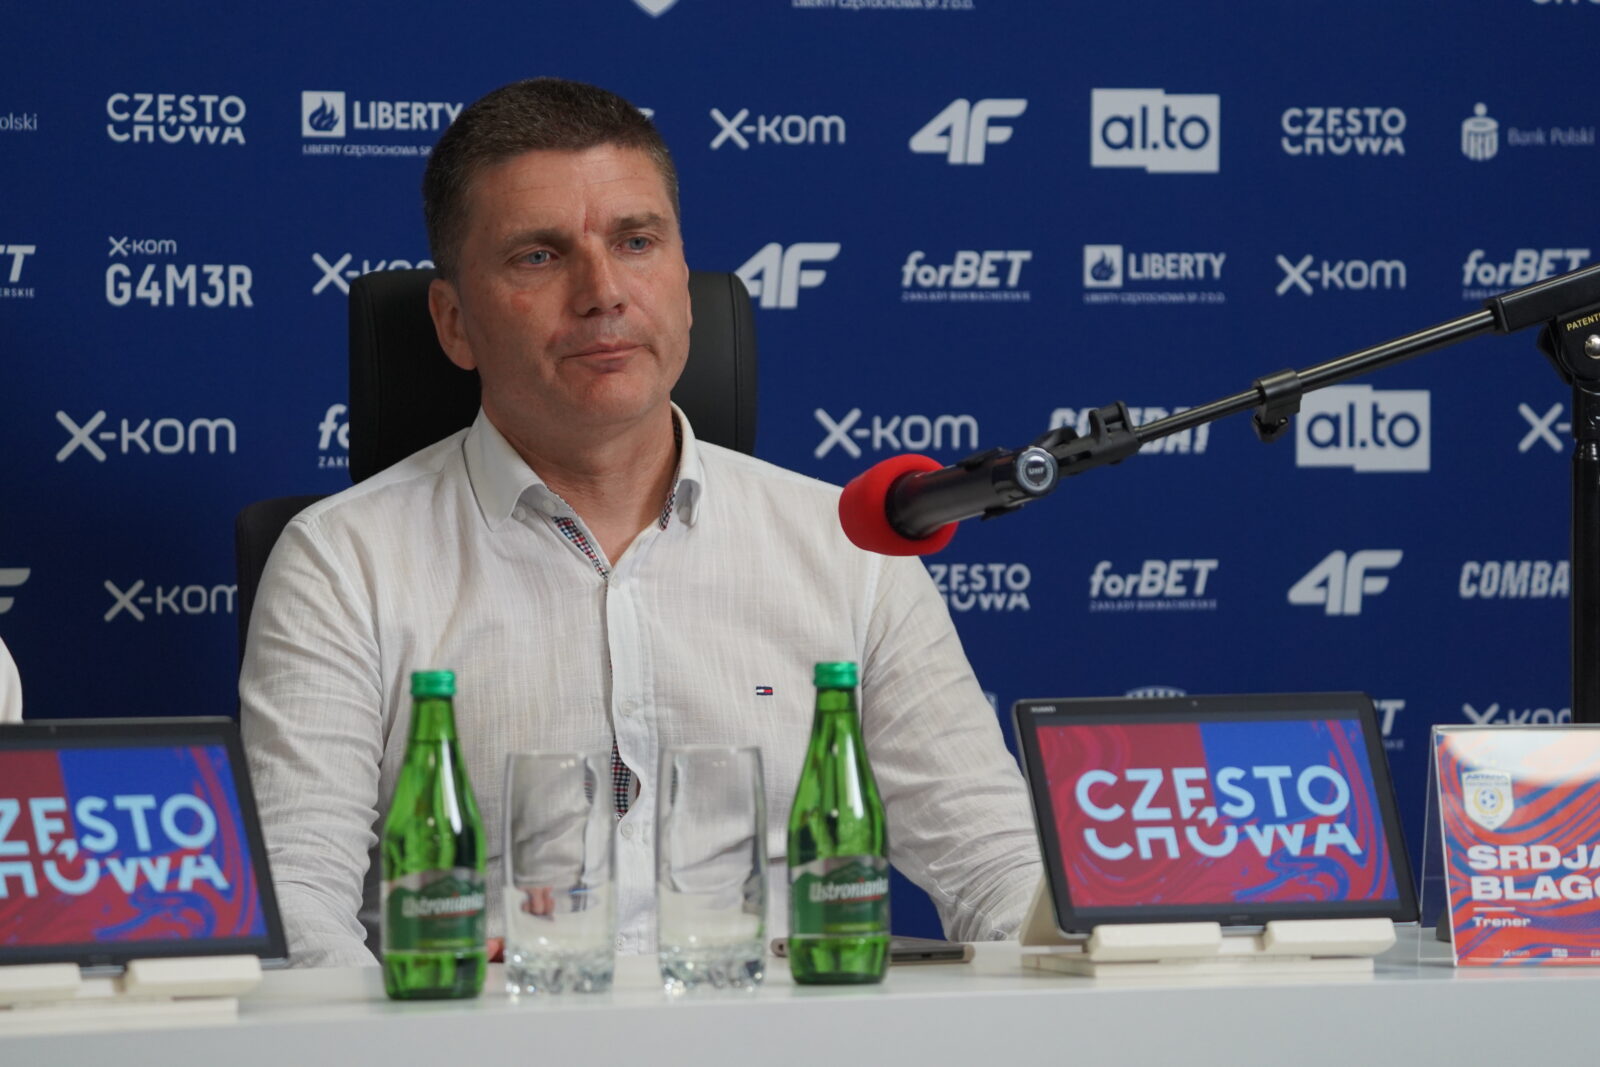 Trener FC Astana Sdrjan Blagojević po porażce z Rakowem: Gdy się przegrywa 0:5 to każde usprawiedliwienie brzmi głupio 8